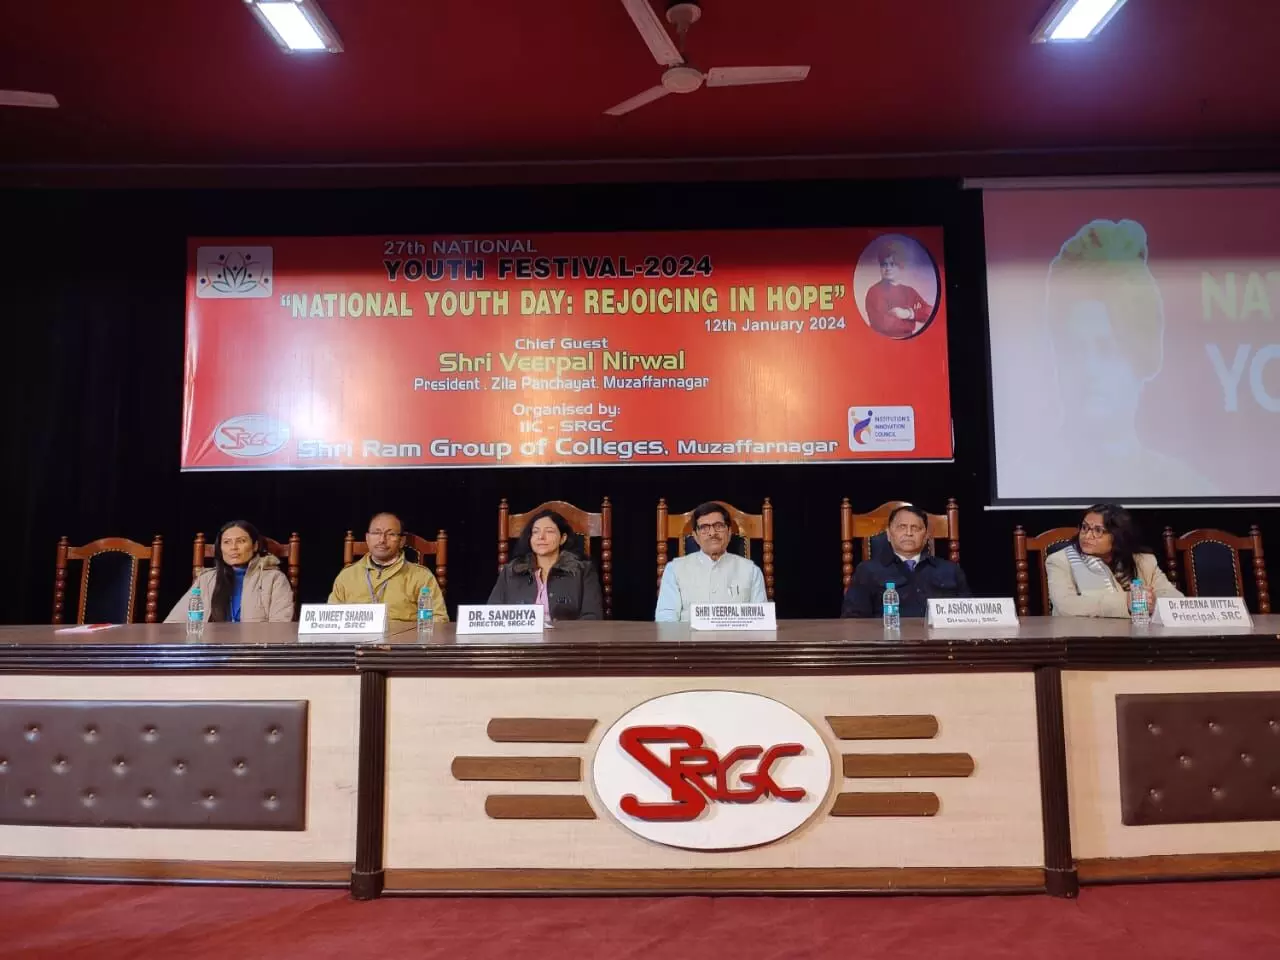 श्रीराम ग्रुप ऑफ कॉलेजेज में किया गया राष्ट्रीय युवा दिवस का आयोजन